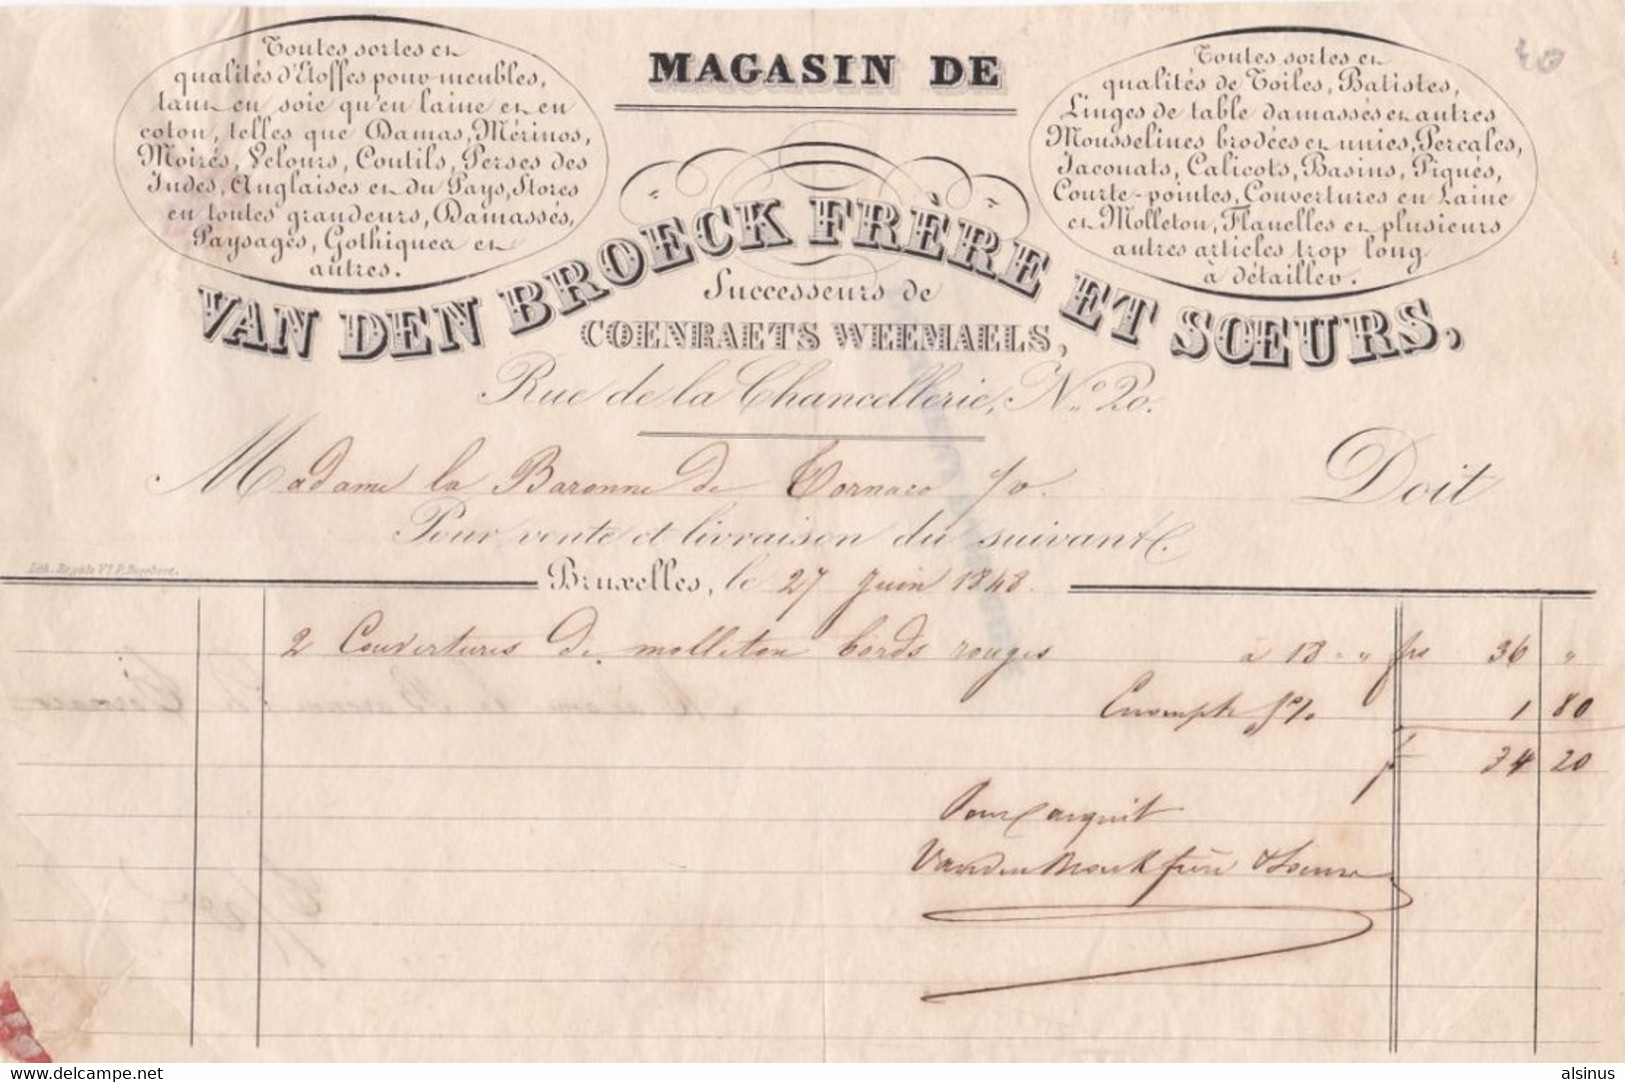 BRUXELLES - FACTURE DE 1848 ADRESSEE A MADAME LA BARONNE DE TORNARO - MAGASIN VAN DEB BROECK FRERE ET SOEURS - Kleding & Textiel